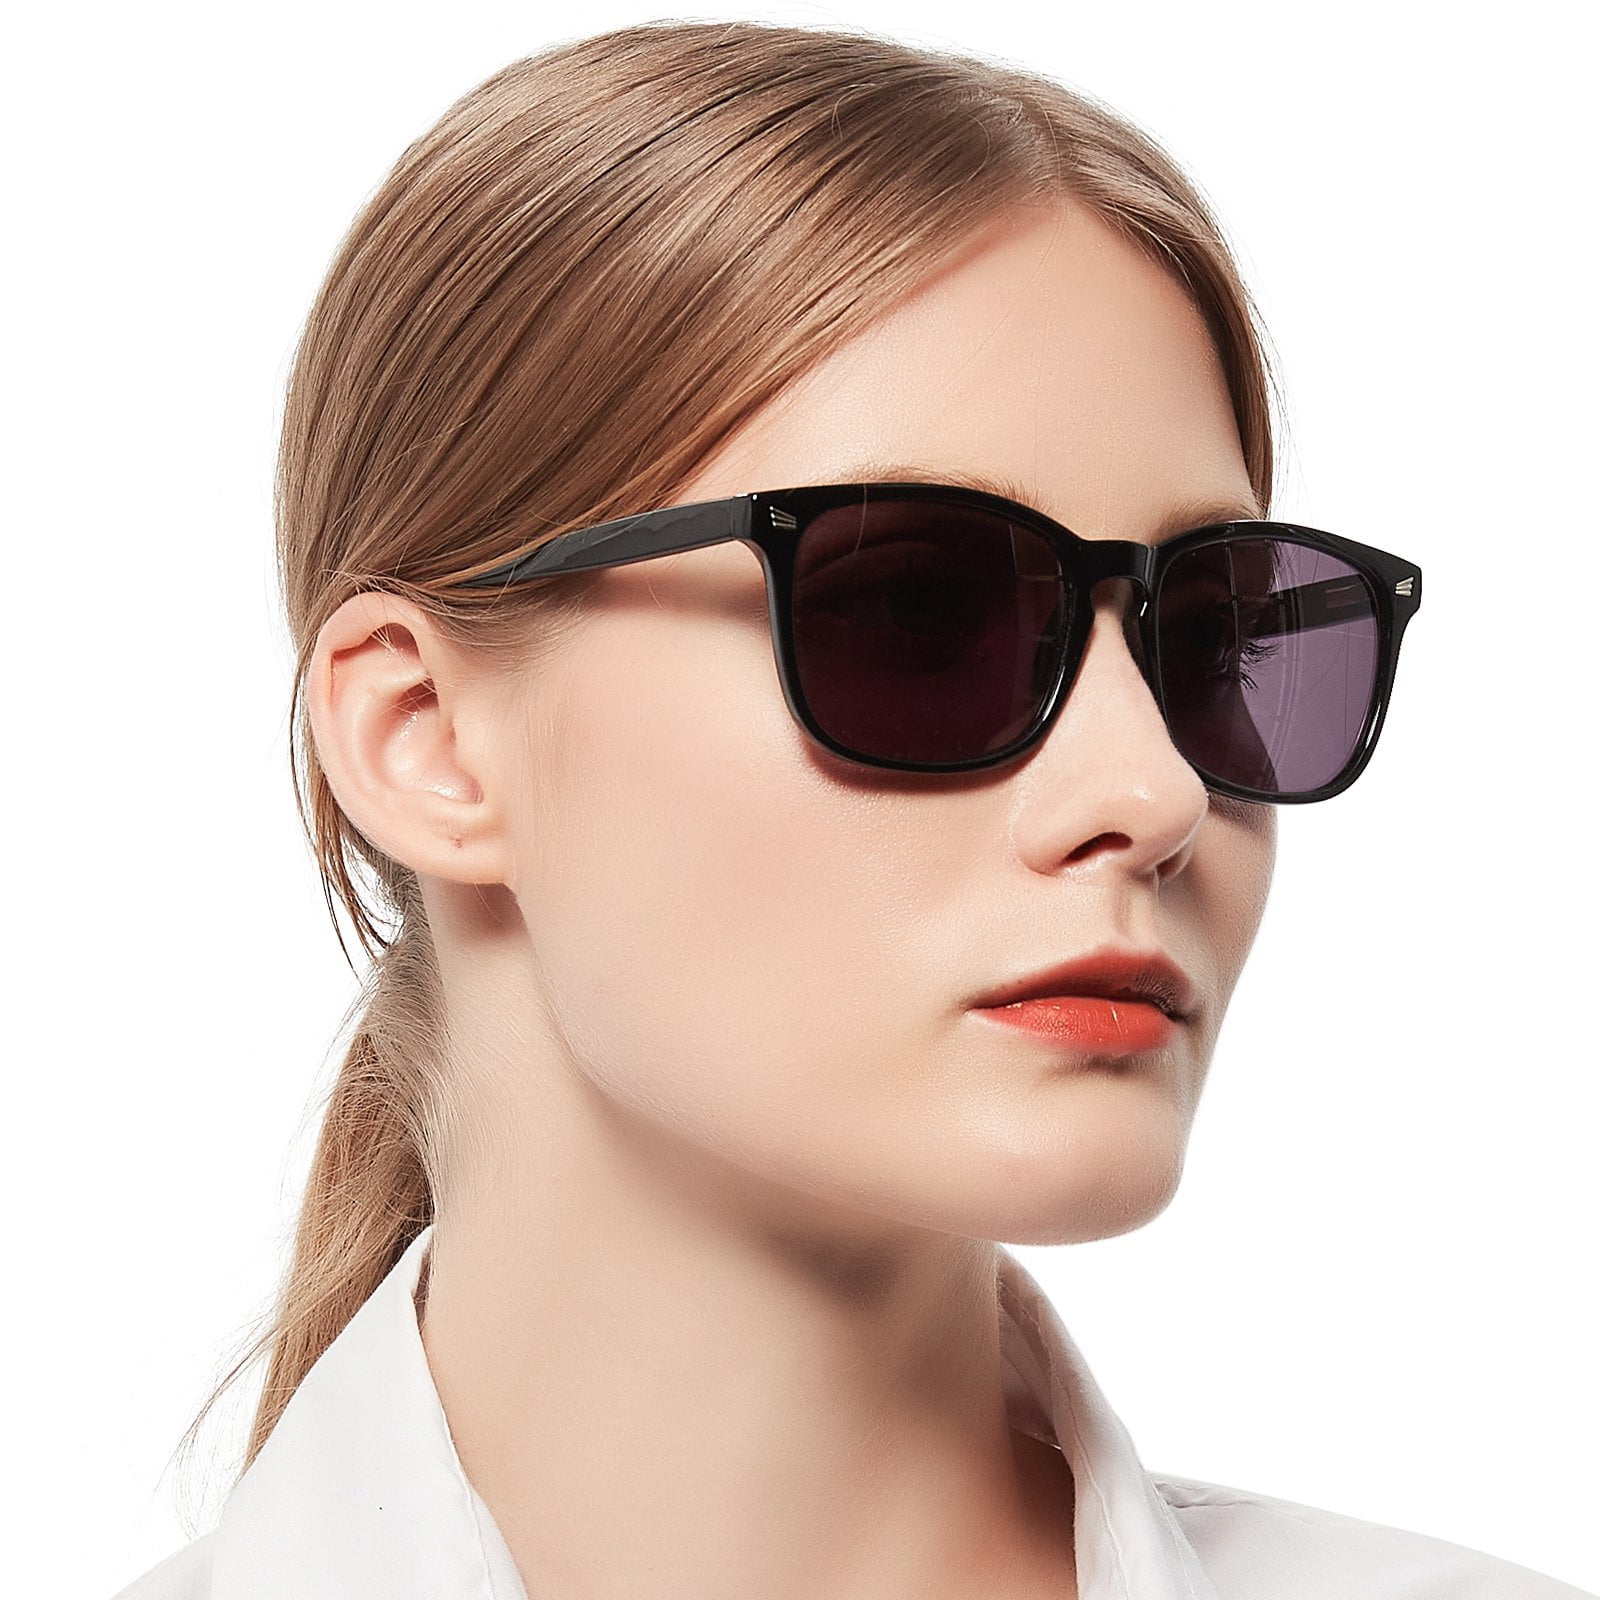 MARE AZZURO Reader Sunglasses for Women Sun Reading